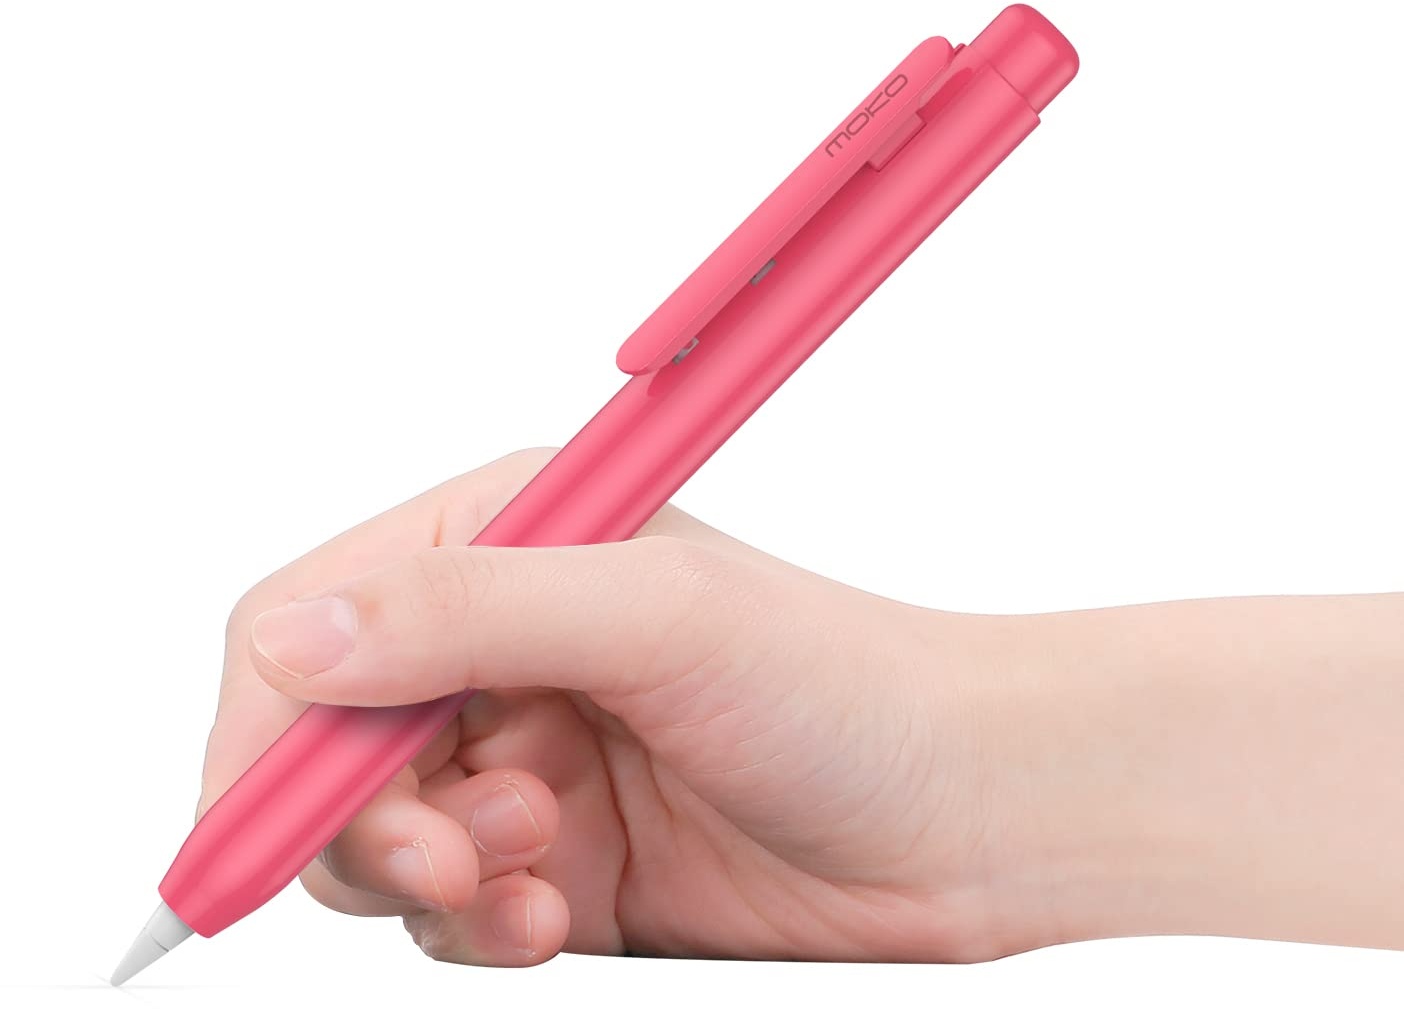 MoKo Hülle Kompatibel mit Apple Pencil 1. Generation, Retractable Ausziehbare Schutzhülle mit Apple Pencil Hülle, Stifthalter mit Stabilem Clip, rutschfeste Einfarbige Stifthülle, Wassermelone Rot